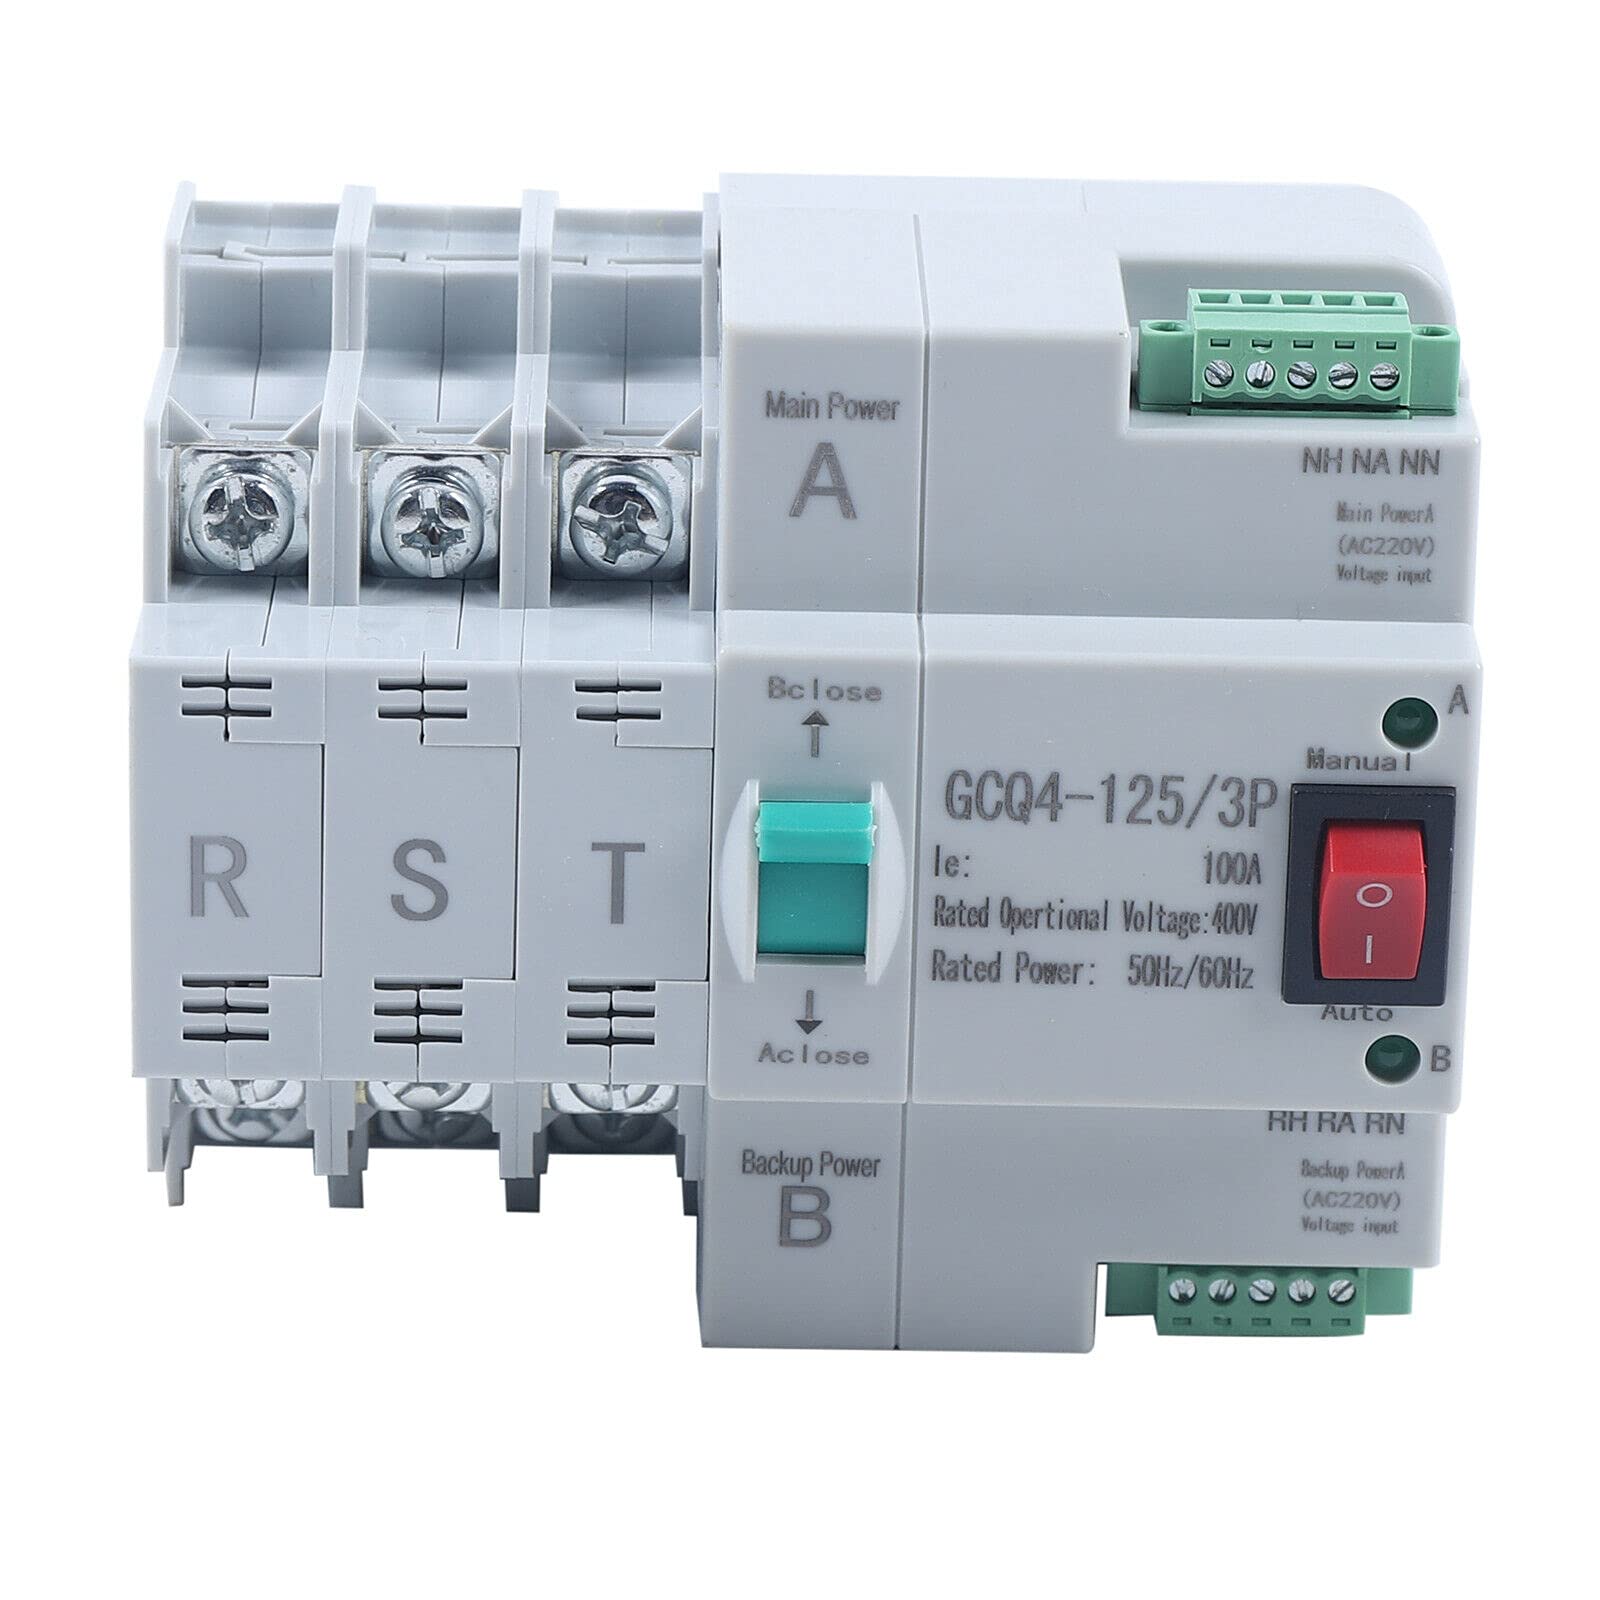 MINI interruttore di trasferimento automatico a doppia alimentazione 3P 100A 230V AC Installazione